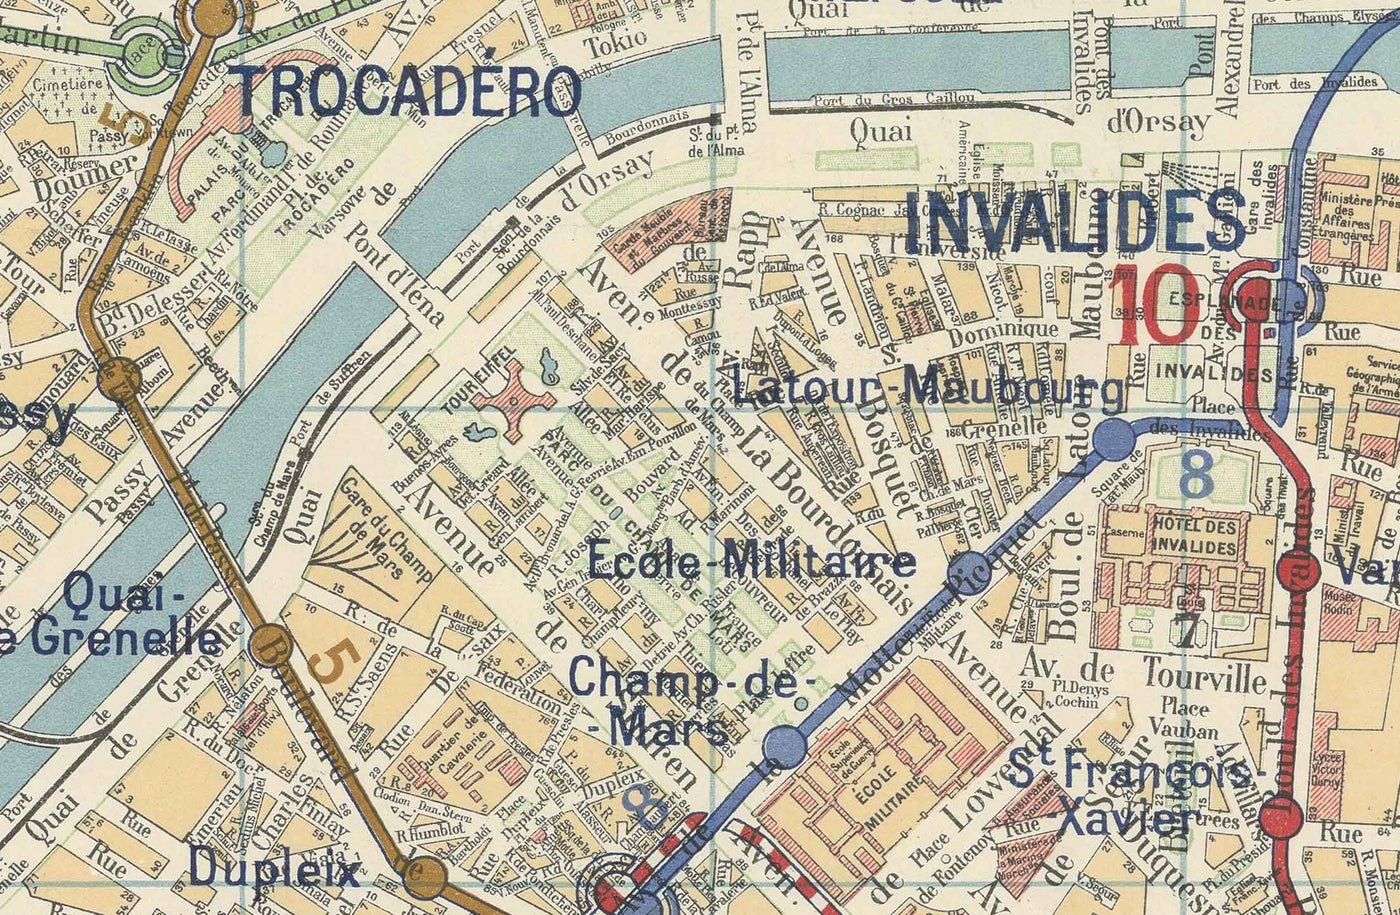 Alte Karte der Pariser Métro und Sehenswürdigkeiten, 1934 von Gaillac-Monrocq - 13 Linien, Arc de Triomphe, Stadtplan des 20.